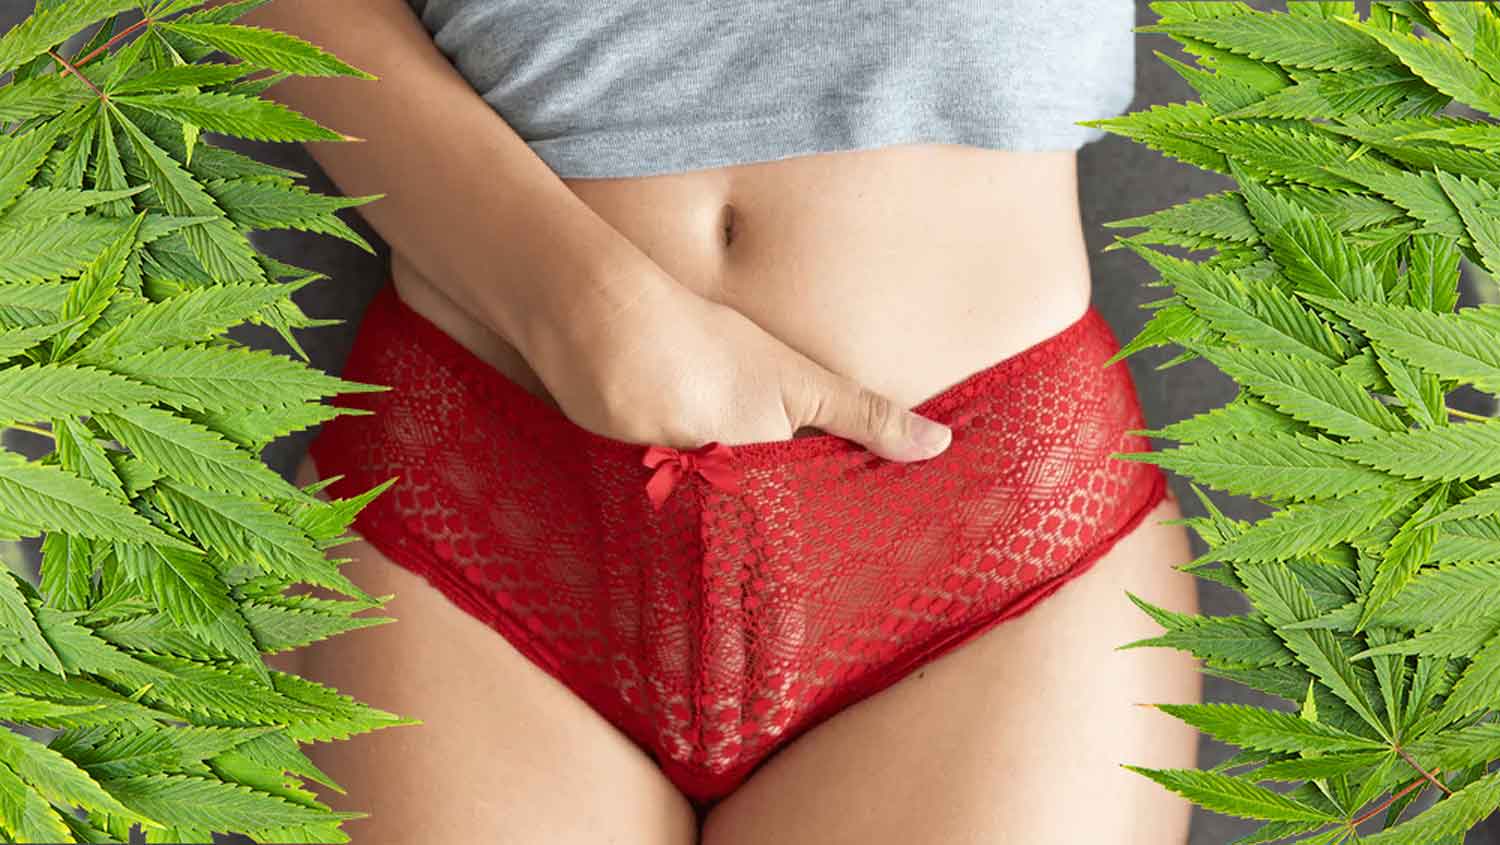 Featured image for “Sex a marihuana ? Podle odborníků pomáhá ženám při orgasmu”